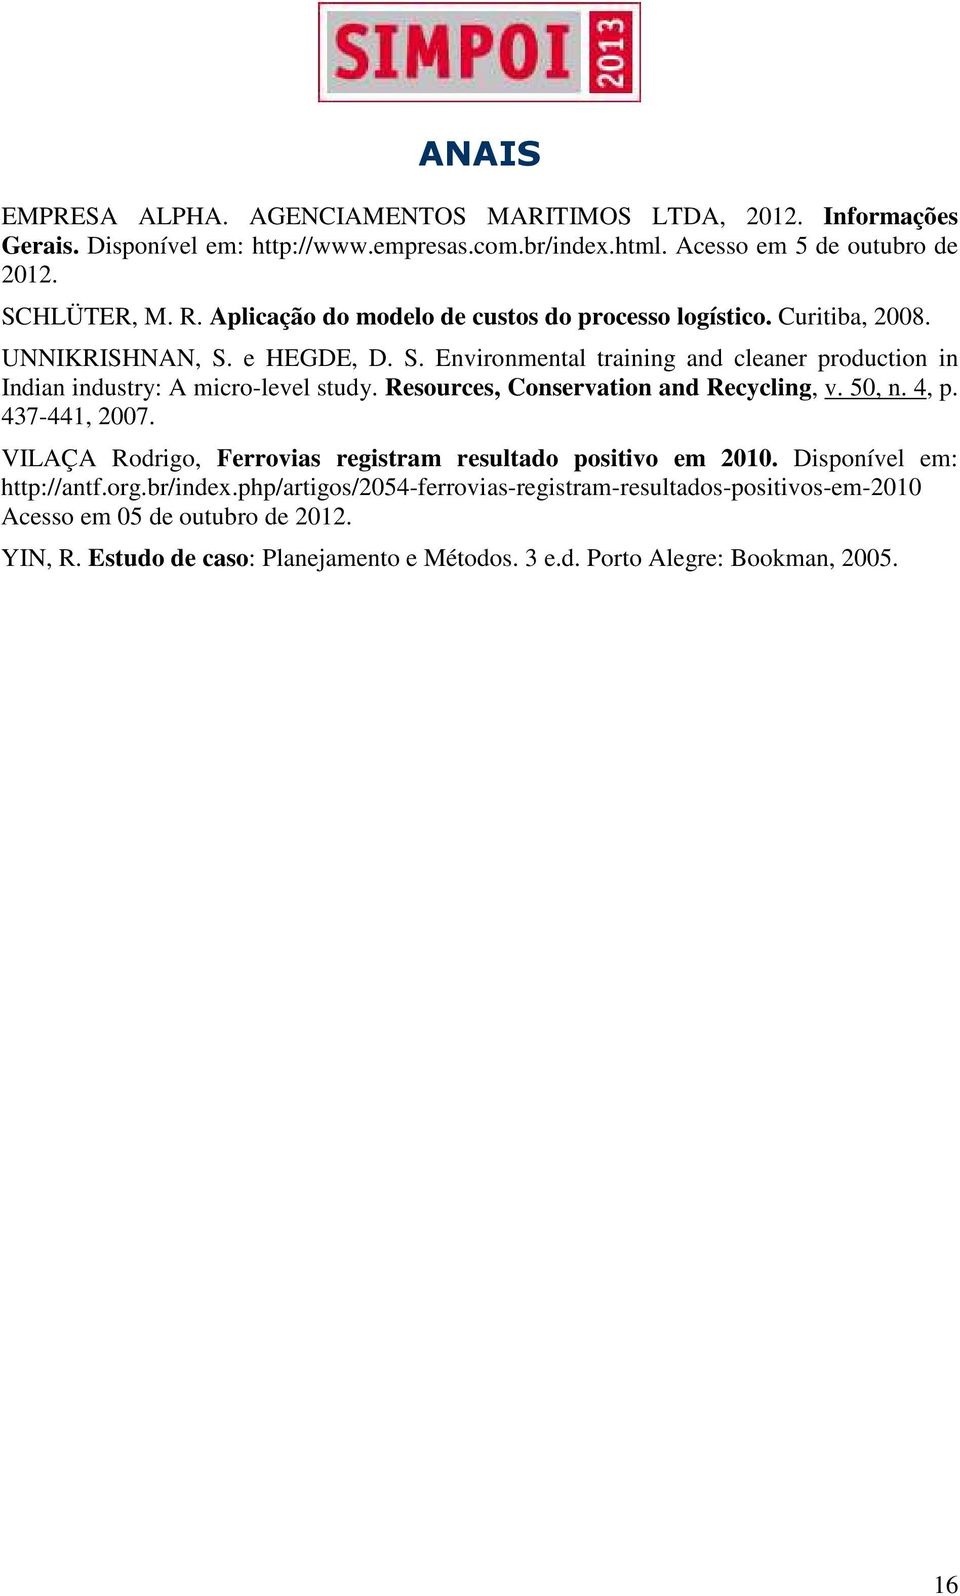 Resources, Conservation and Recycling, v. 50, n. 4, p. 437-441, 2007. VILAÇA Rodrigo, Ferrovias registram resultado positivo em 2010. Disponível em: http://antf.org.br/index.